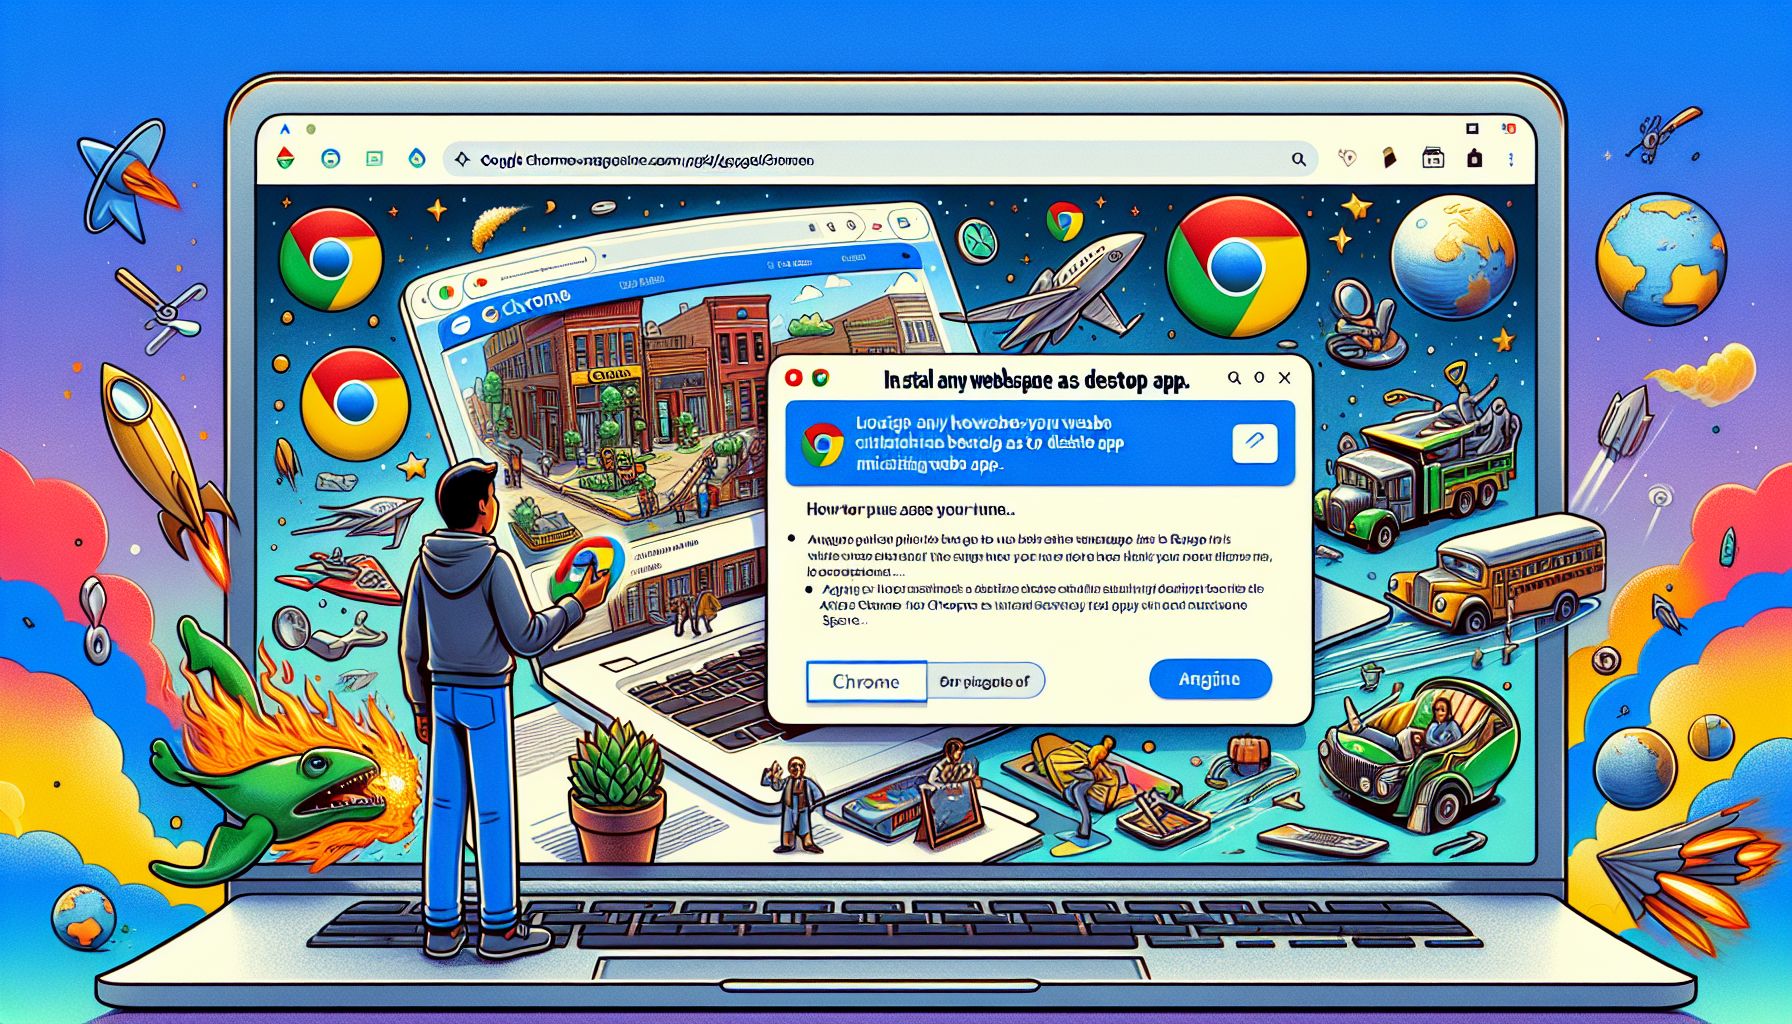 Meer informatie over "Binnenkort webpagina installeren als desktop-app in Google Chrome"